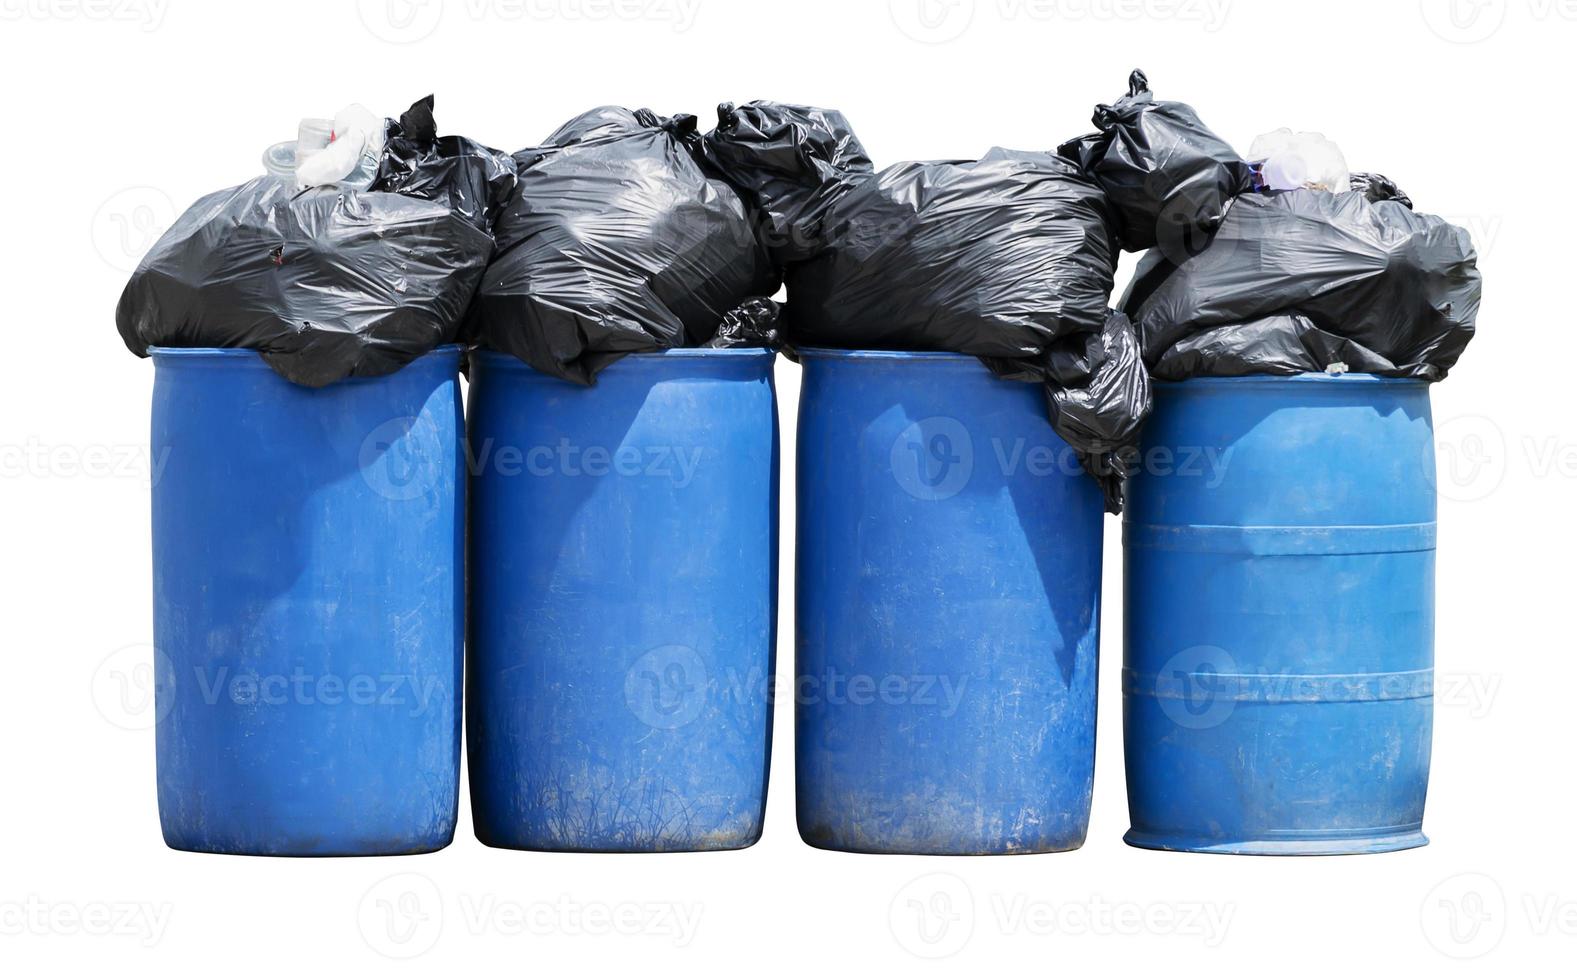 quatre vieilles poubelles bleues avec des sacs à ordures et un tracé de détourage photo